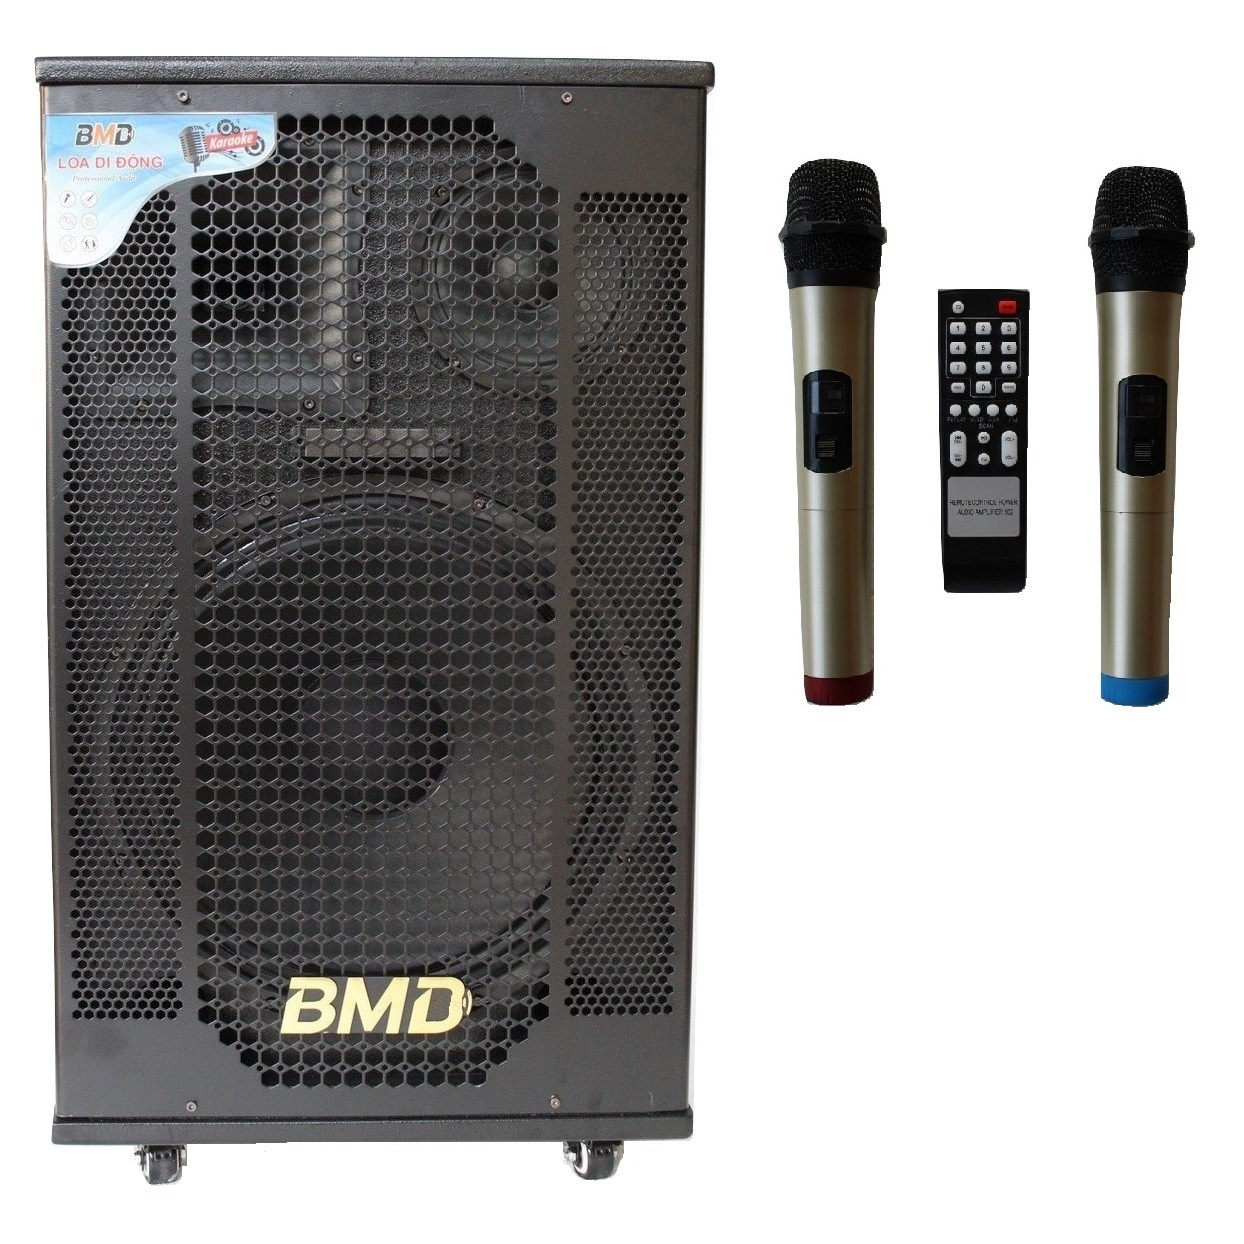 Loa kéo di động karaoke Bass 40 BMD LK-40B60